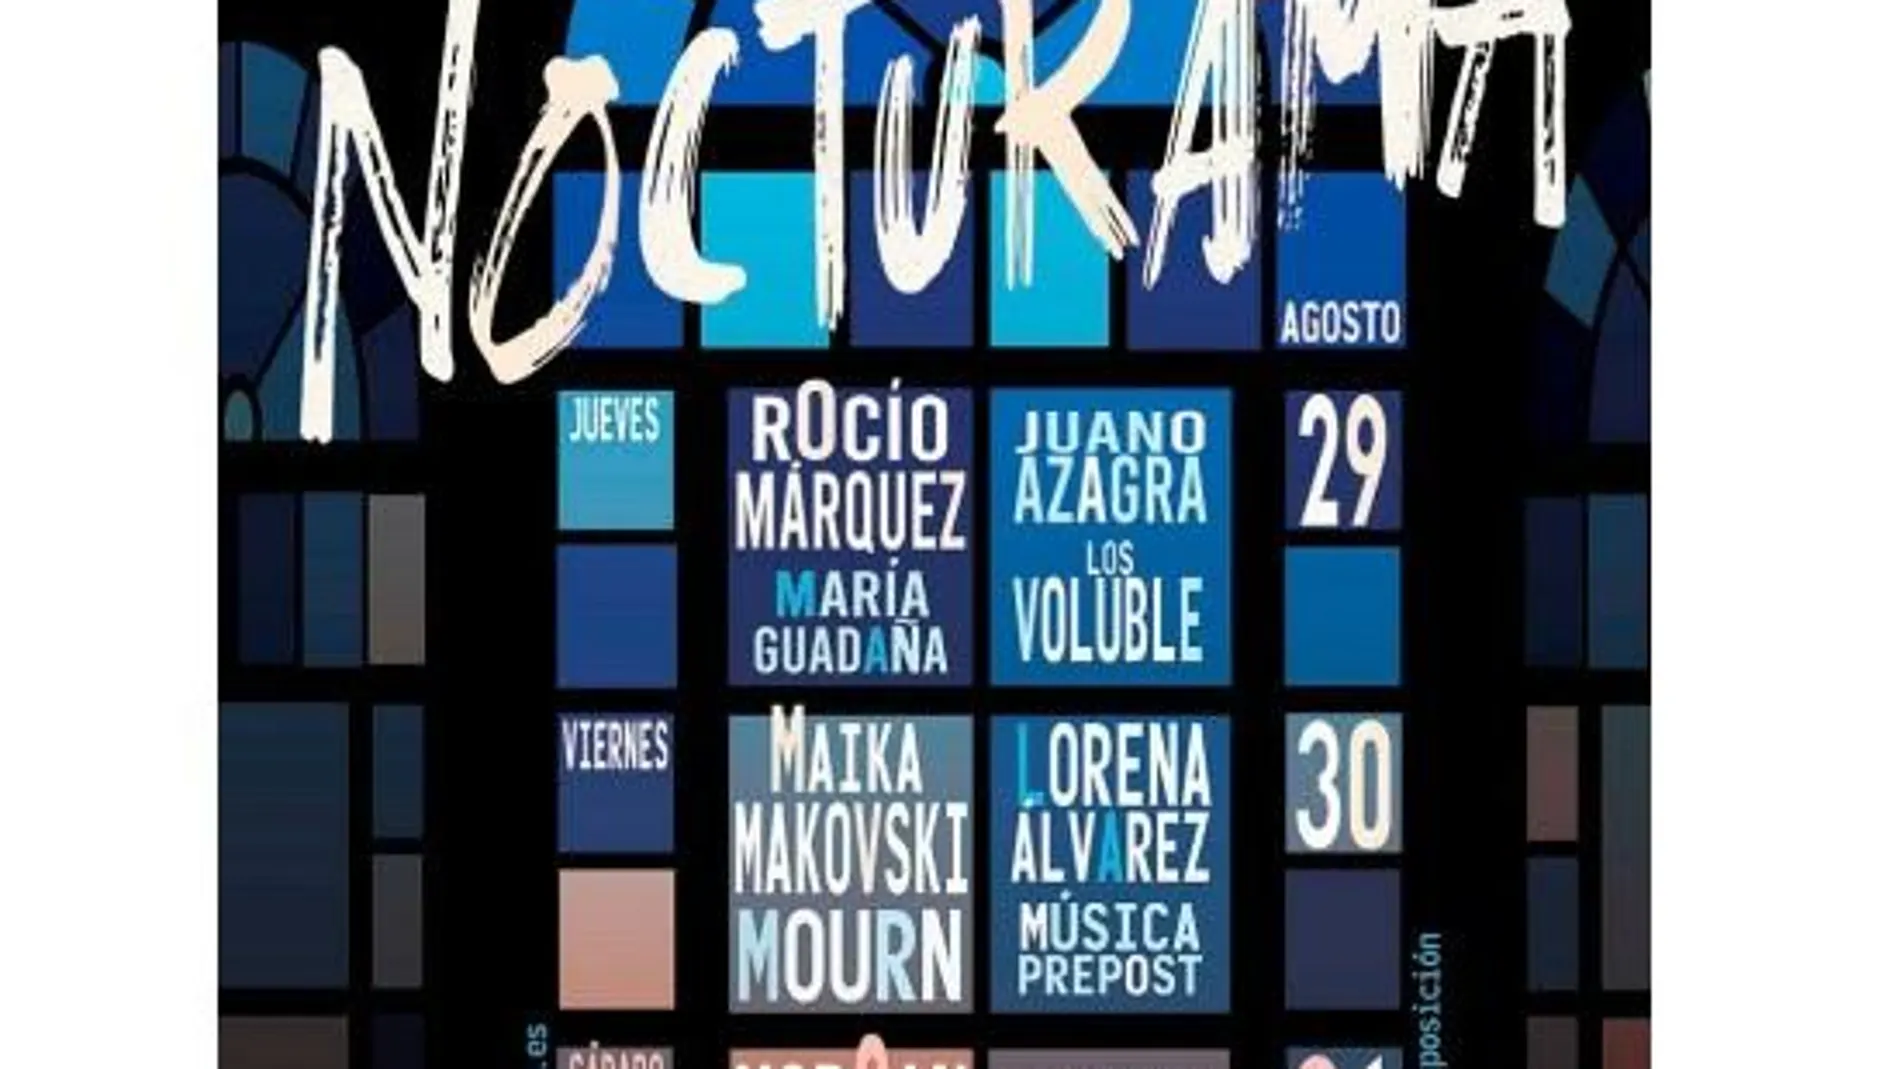 Cartel oficial de Nocturama 2019 / La Razón